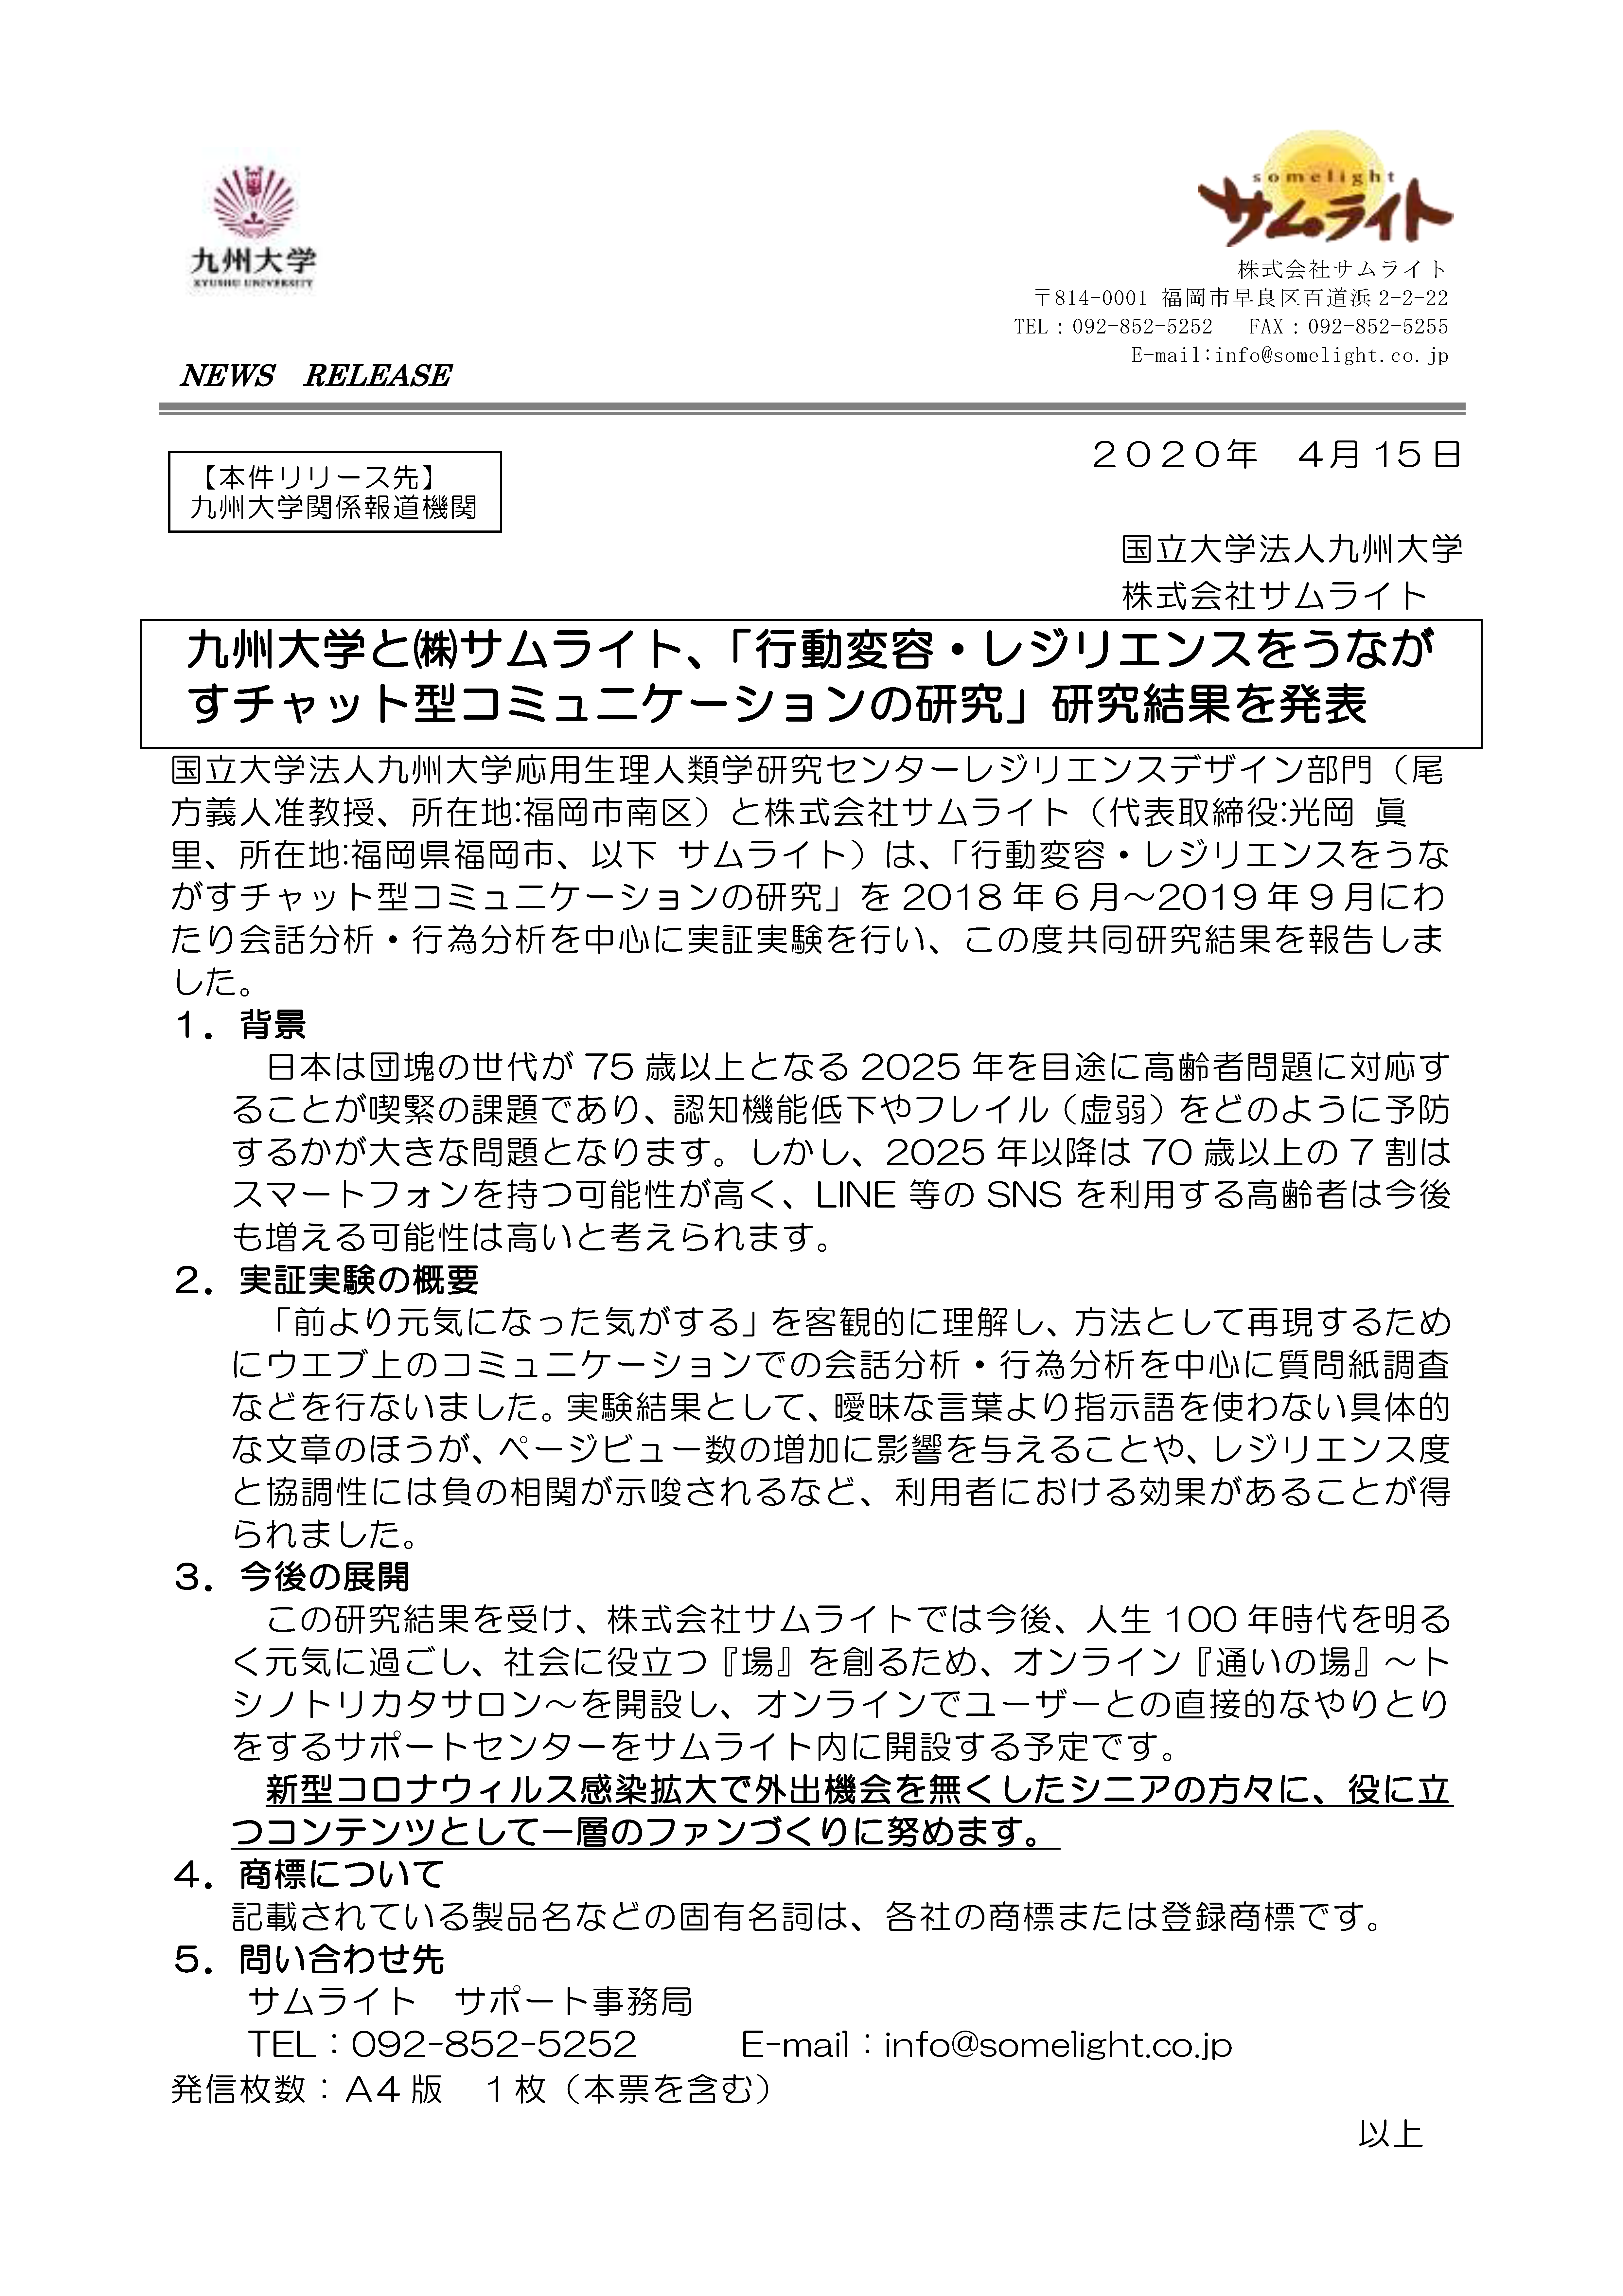 九州大学と株式会社サムライト、「行動変容・レジリエンスをうなが すチャット型コミュニケーションの研究」研究結果を発表のプレスリリース